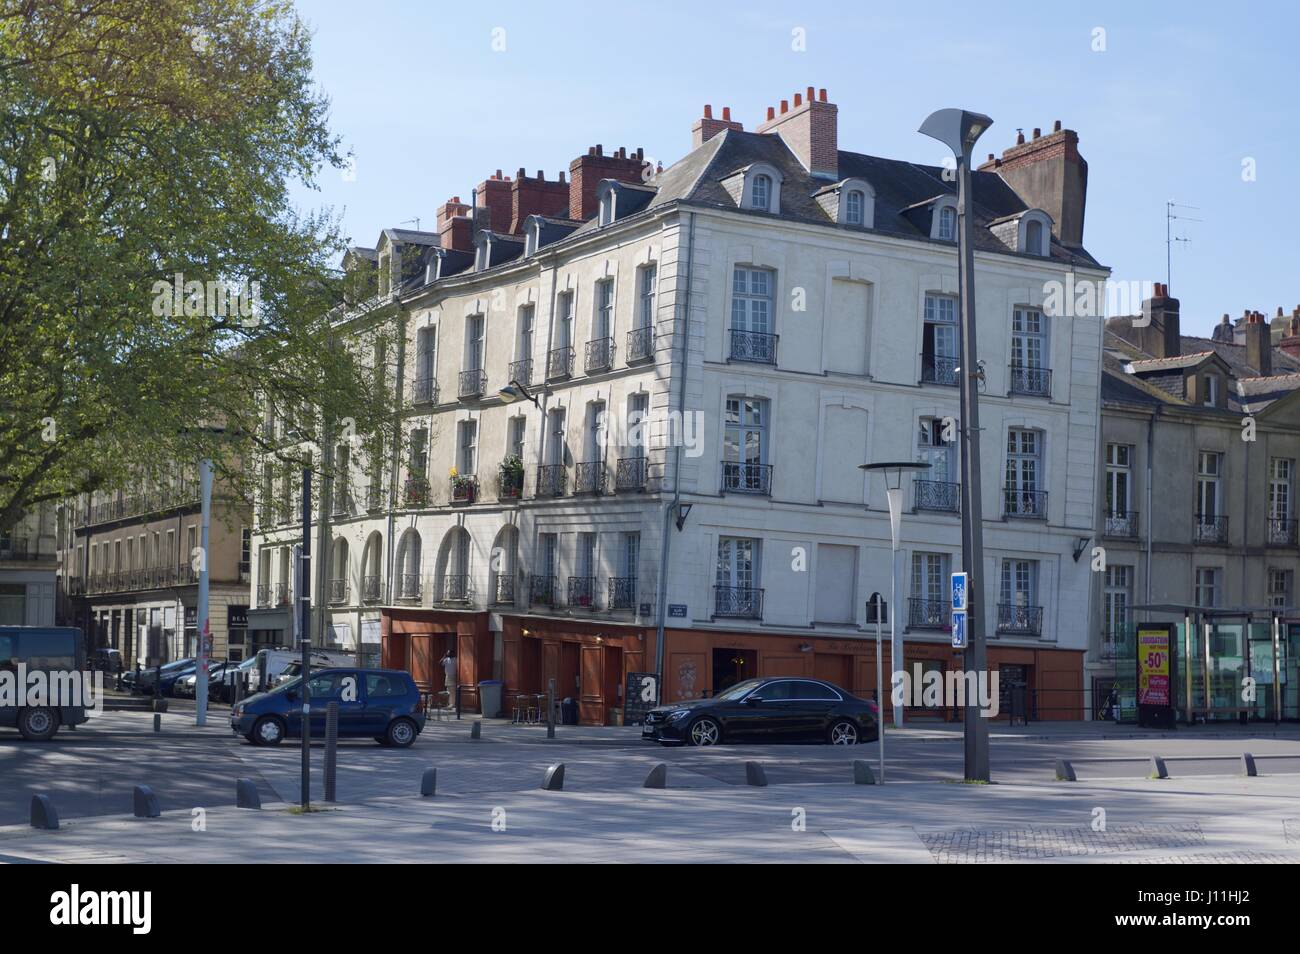 Subsiding buildings in Nantes city centre Stock Photo